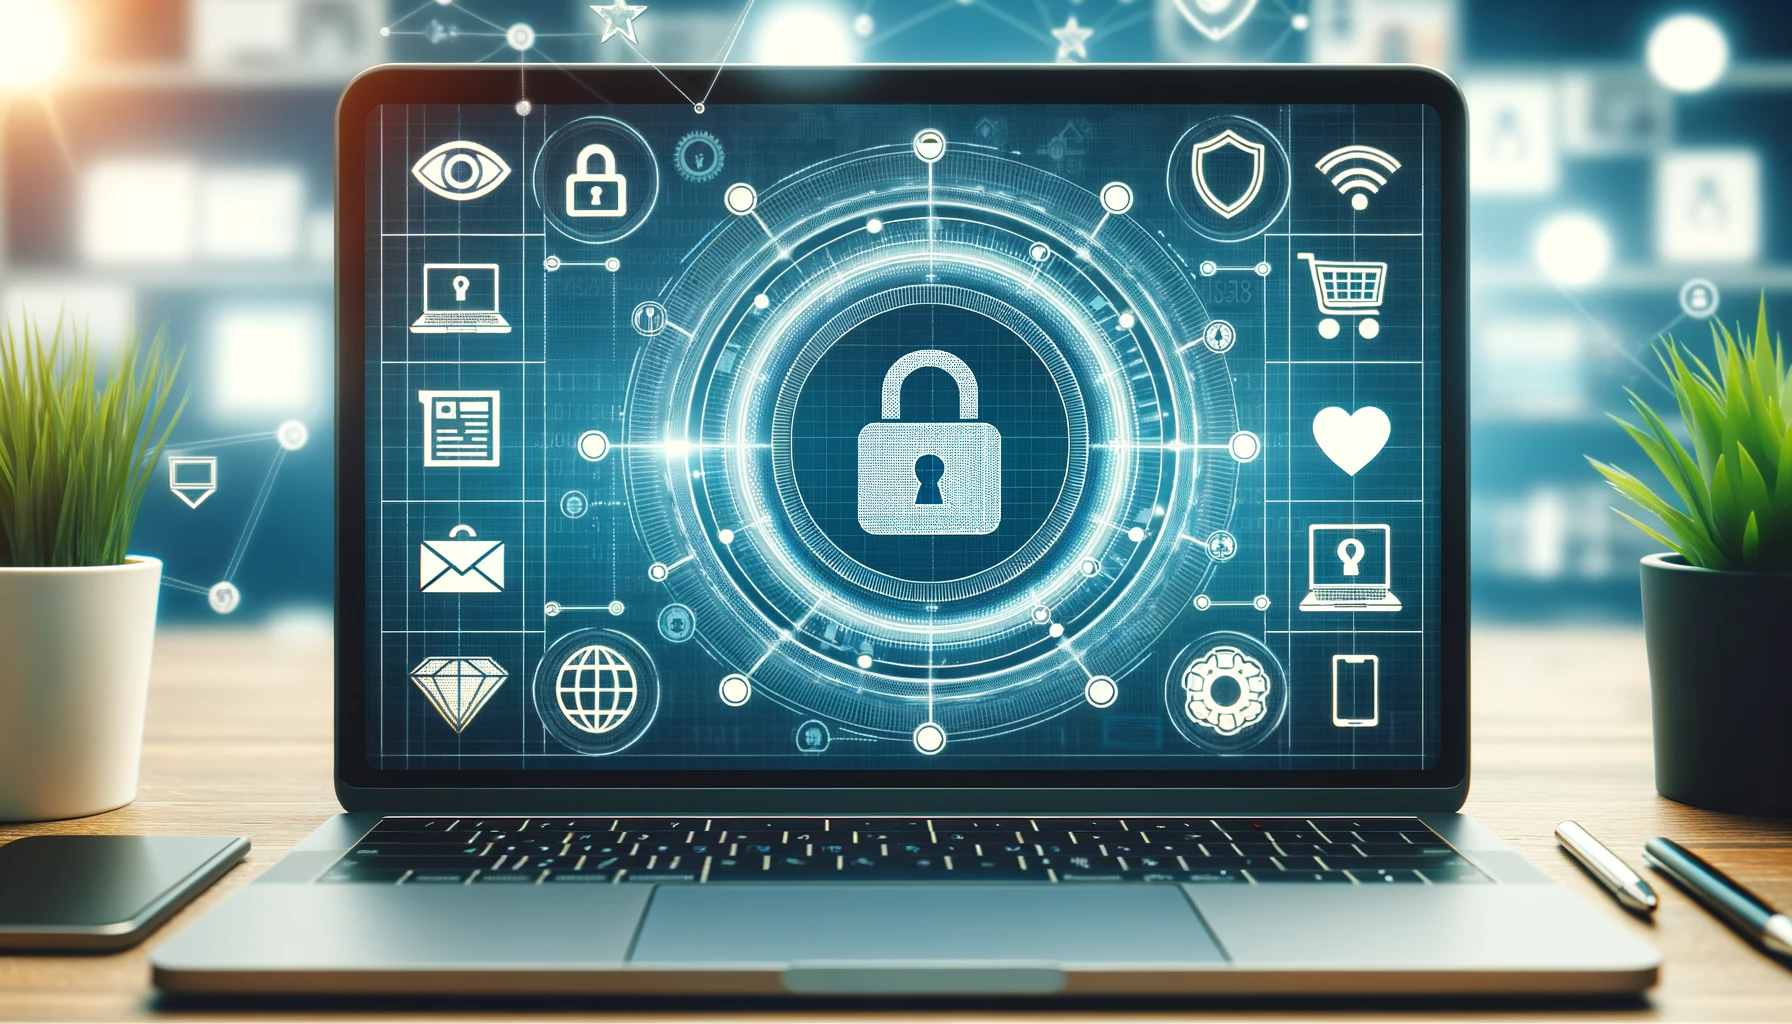  Sicherer E-Commerce: Datenschutz und Transaktionssicherheit gewährleisten